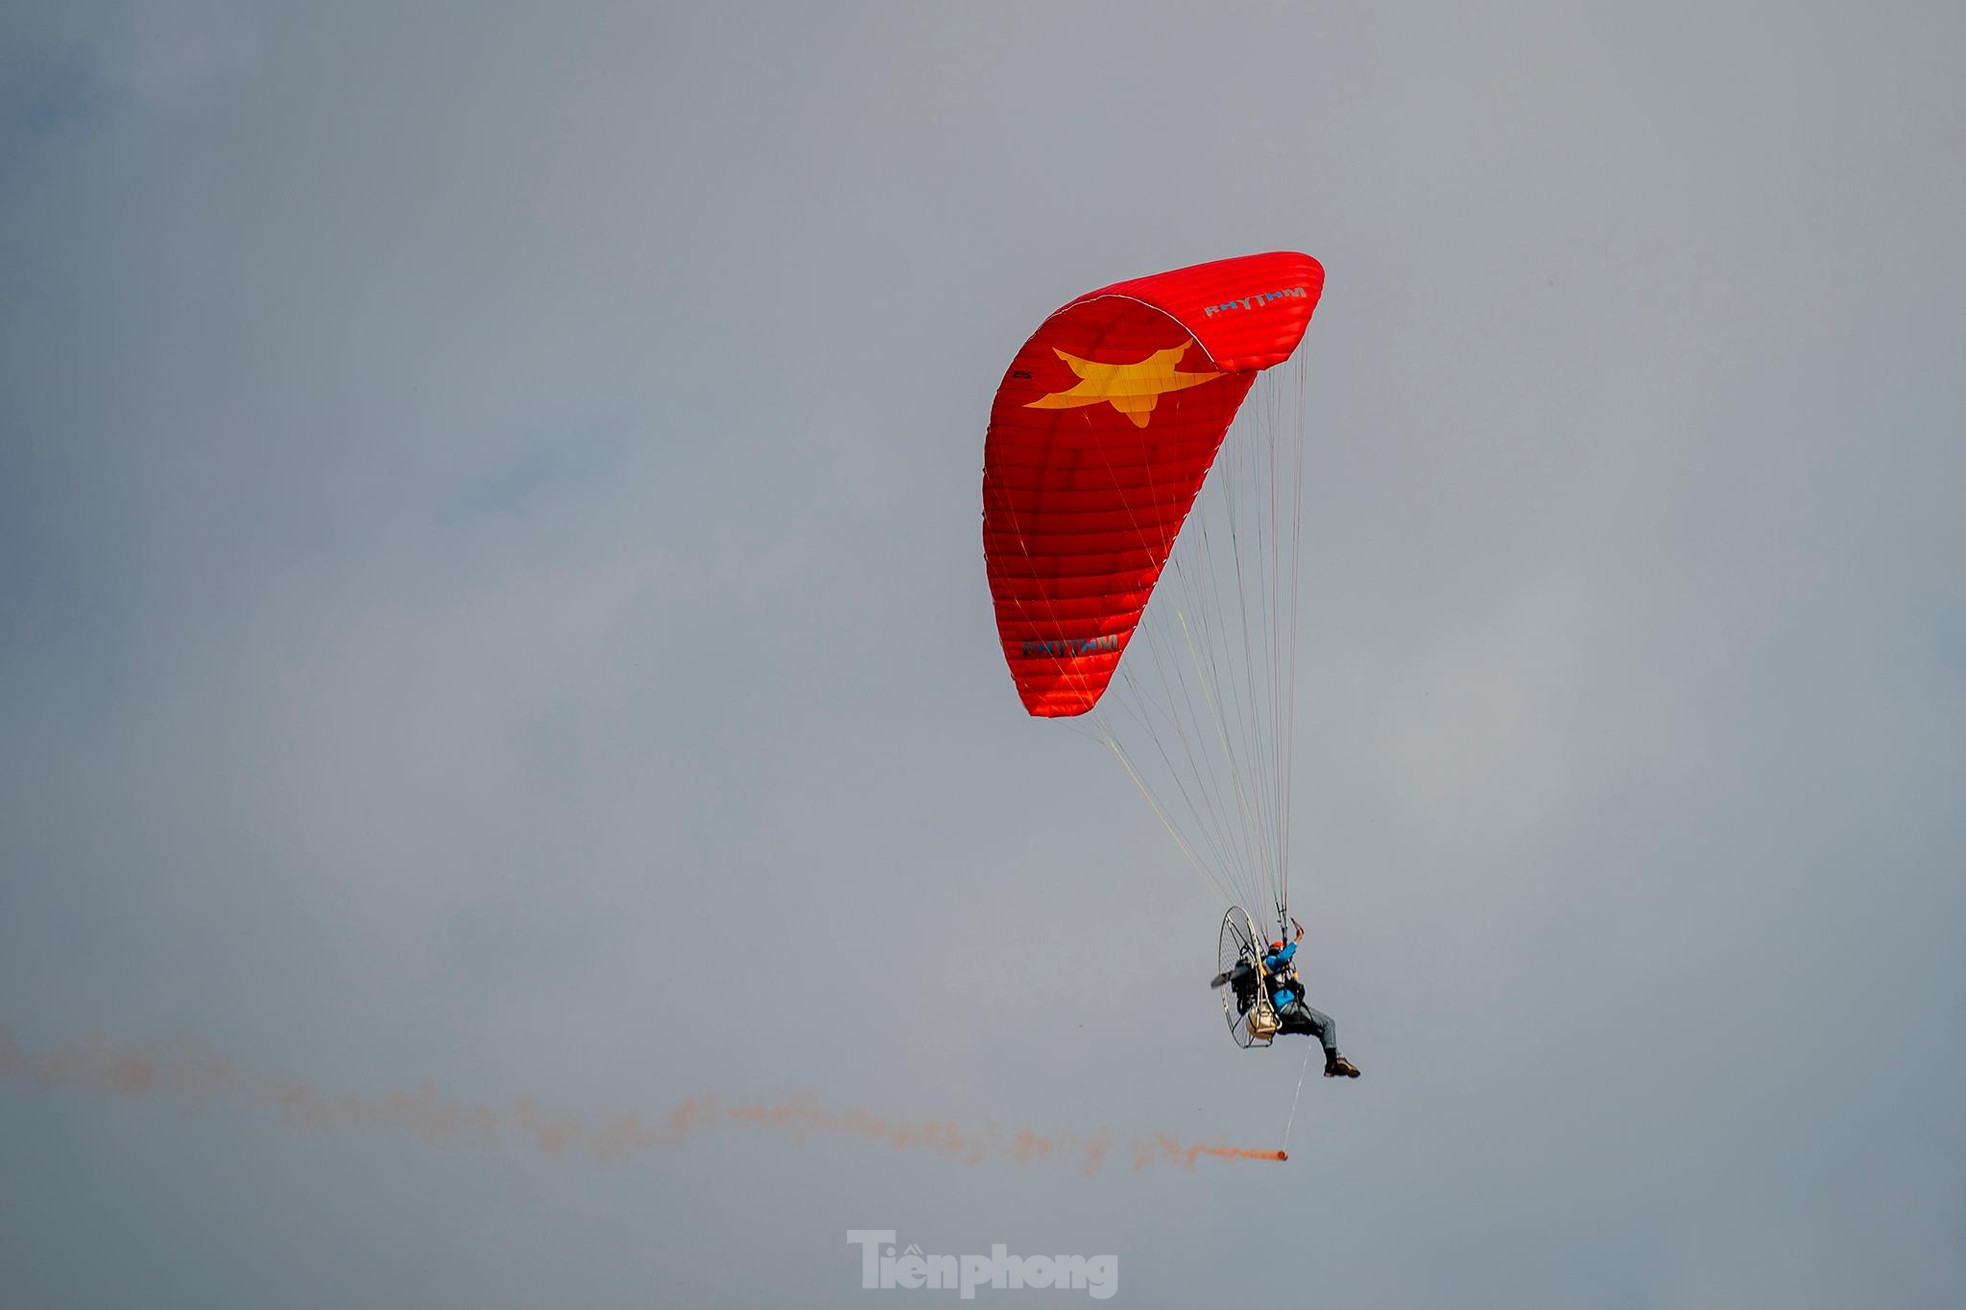 Cận cảnh khinh khí cầu kéo Quốc kỳ rộng 1800m2 mừng Quốc khánh 2/9 - Ảnh 24.